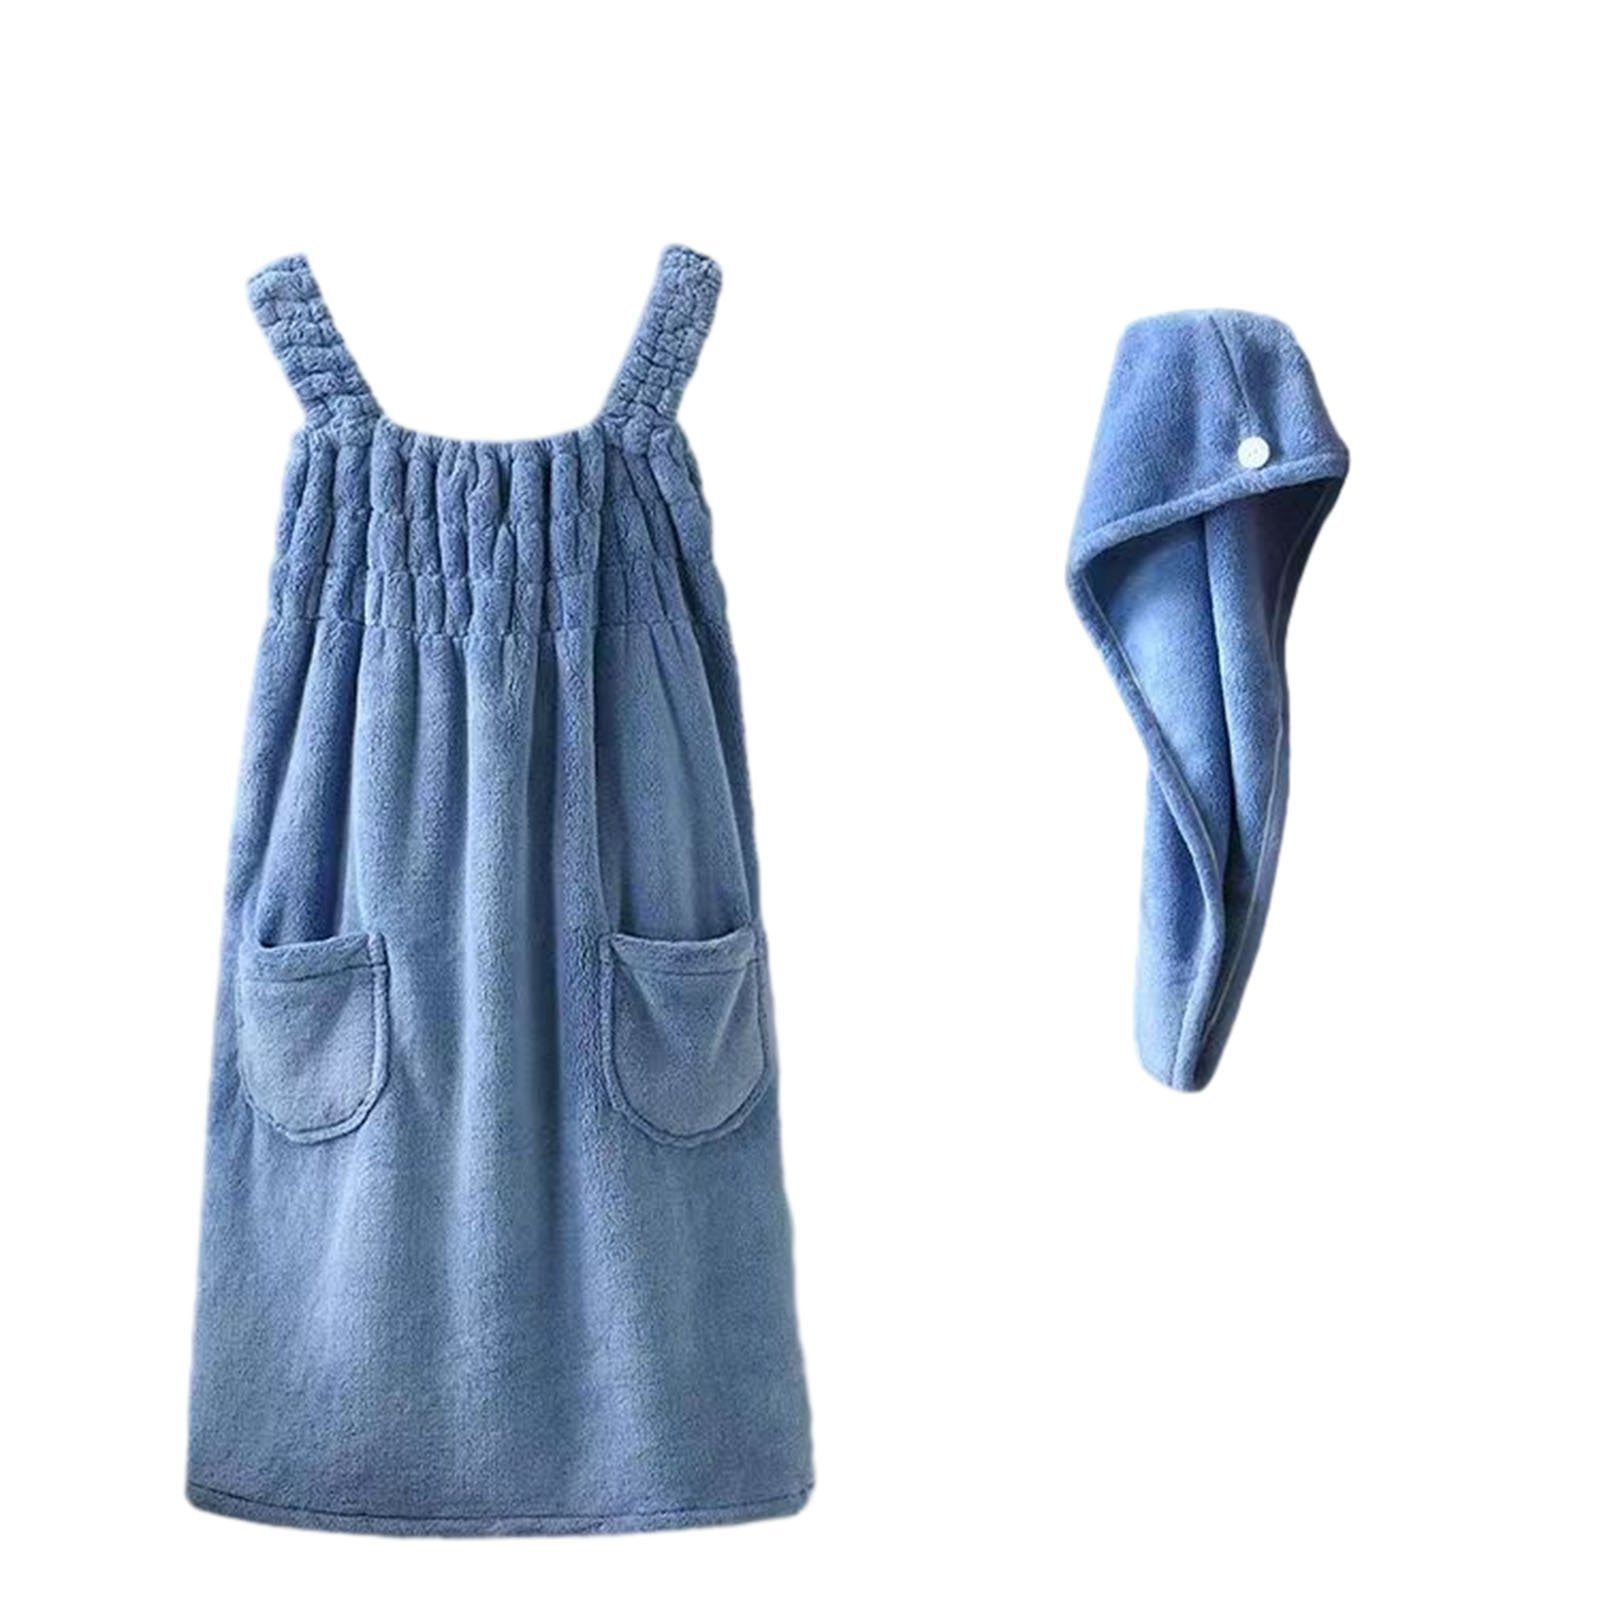 Blusmart Bademantel Schöner Sling-Baderock-Pyjama Für Damen, Leichtes, Extra blue skirt with cap